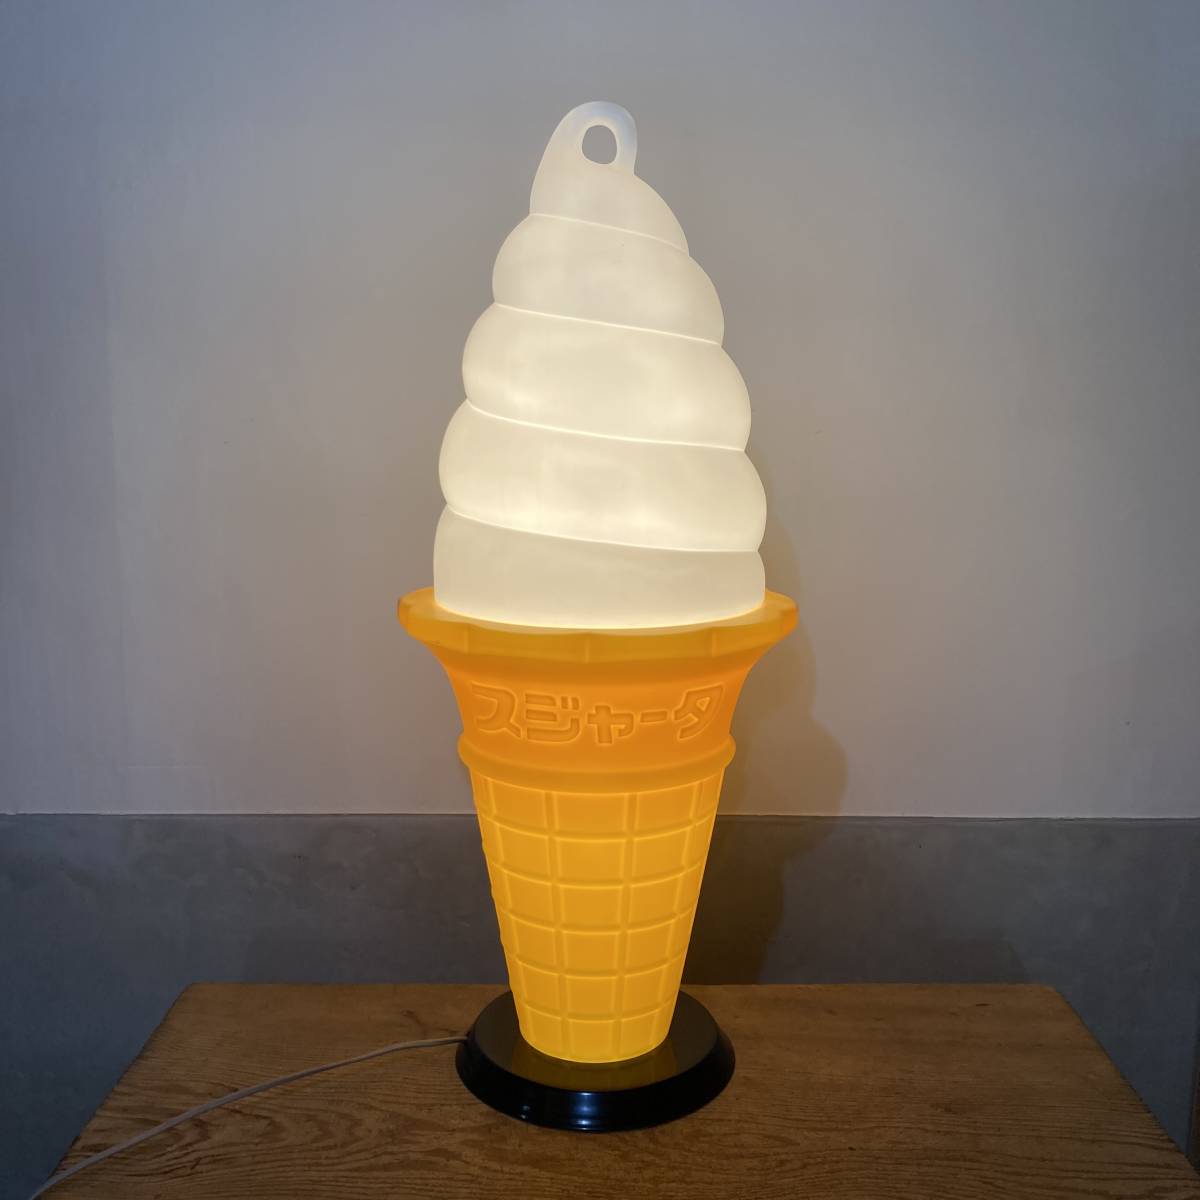 アイスクリーム型のオブジェ